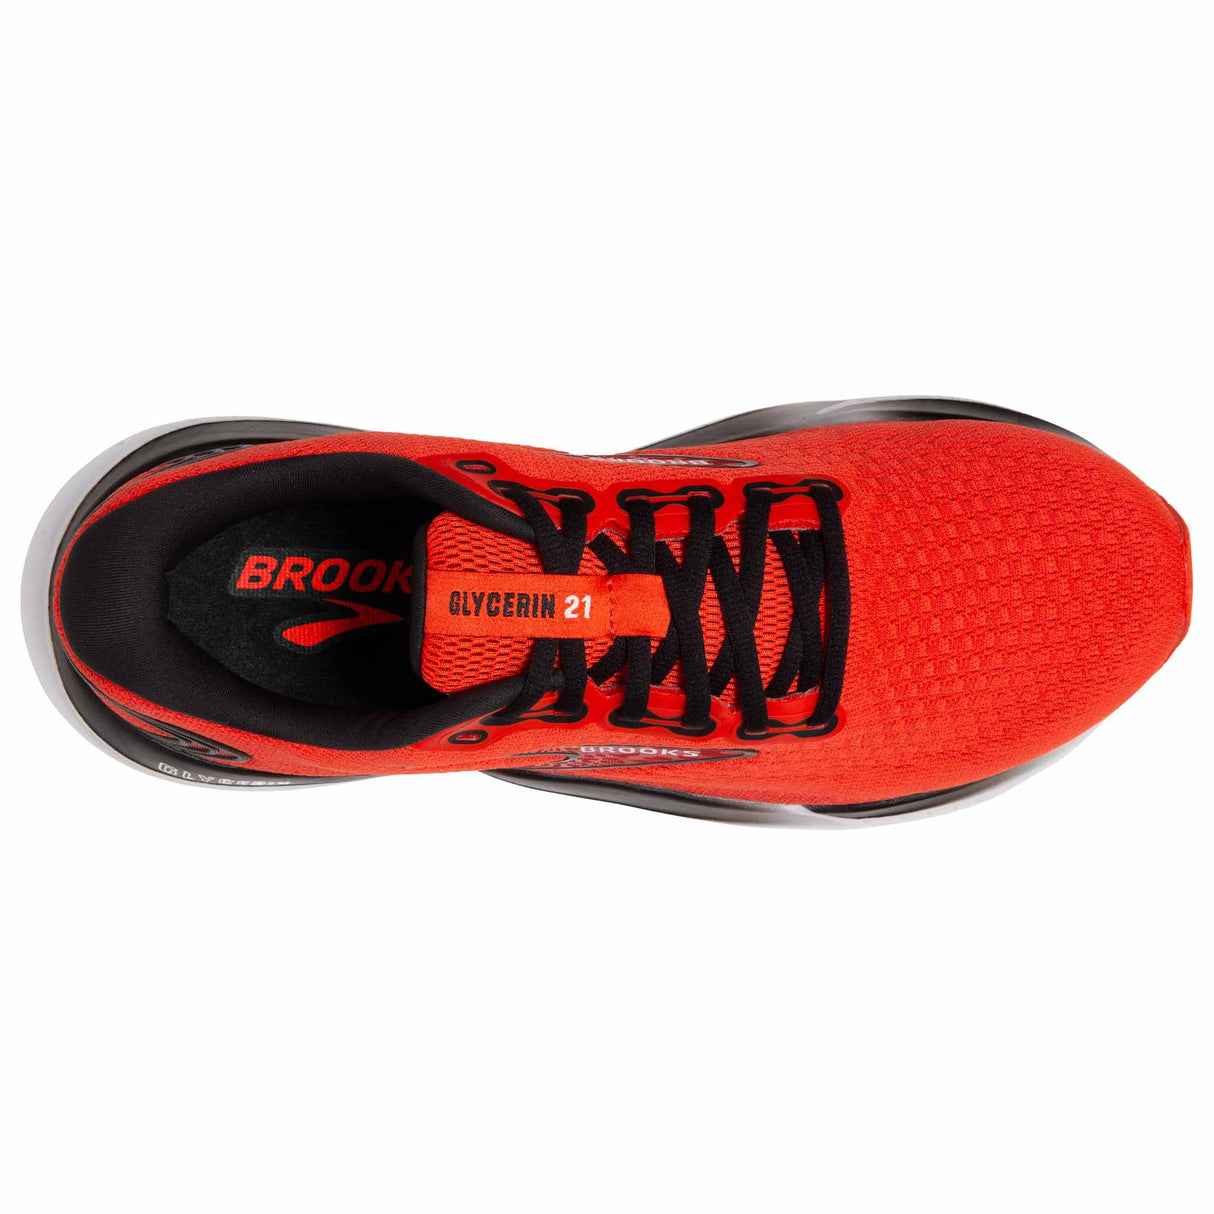 Brooks Glycerin 21 chaussures de course à pied homme - Grenadine / Salsa / Black